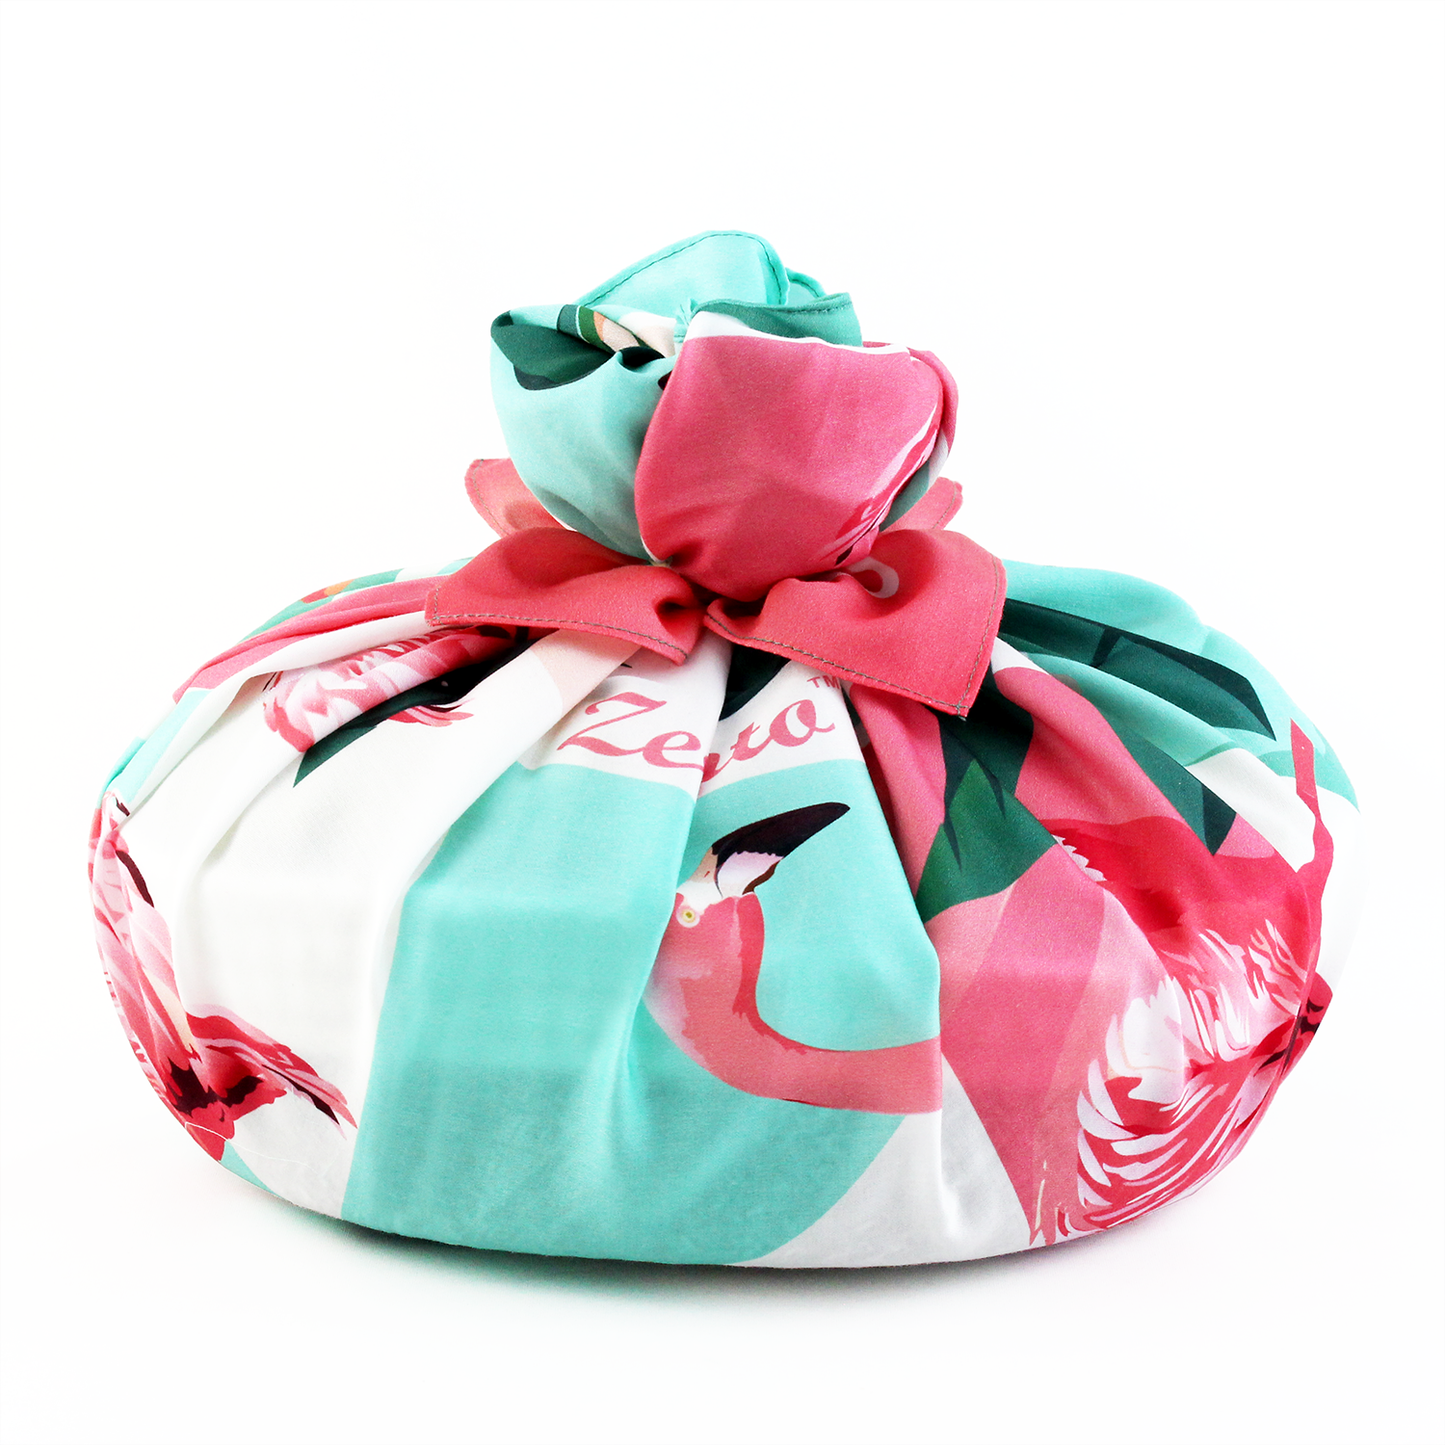 Zeronto Twin Baby Girl Gift Basket - Little Unicorn Princesses